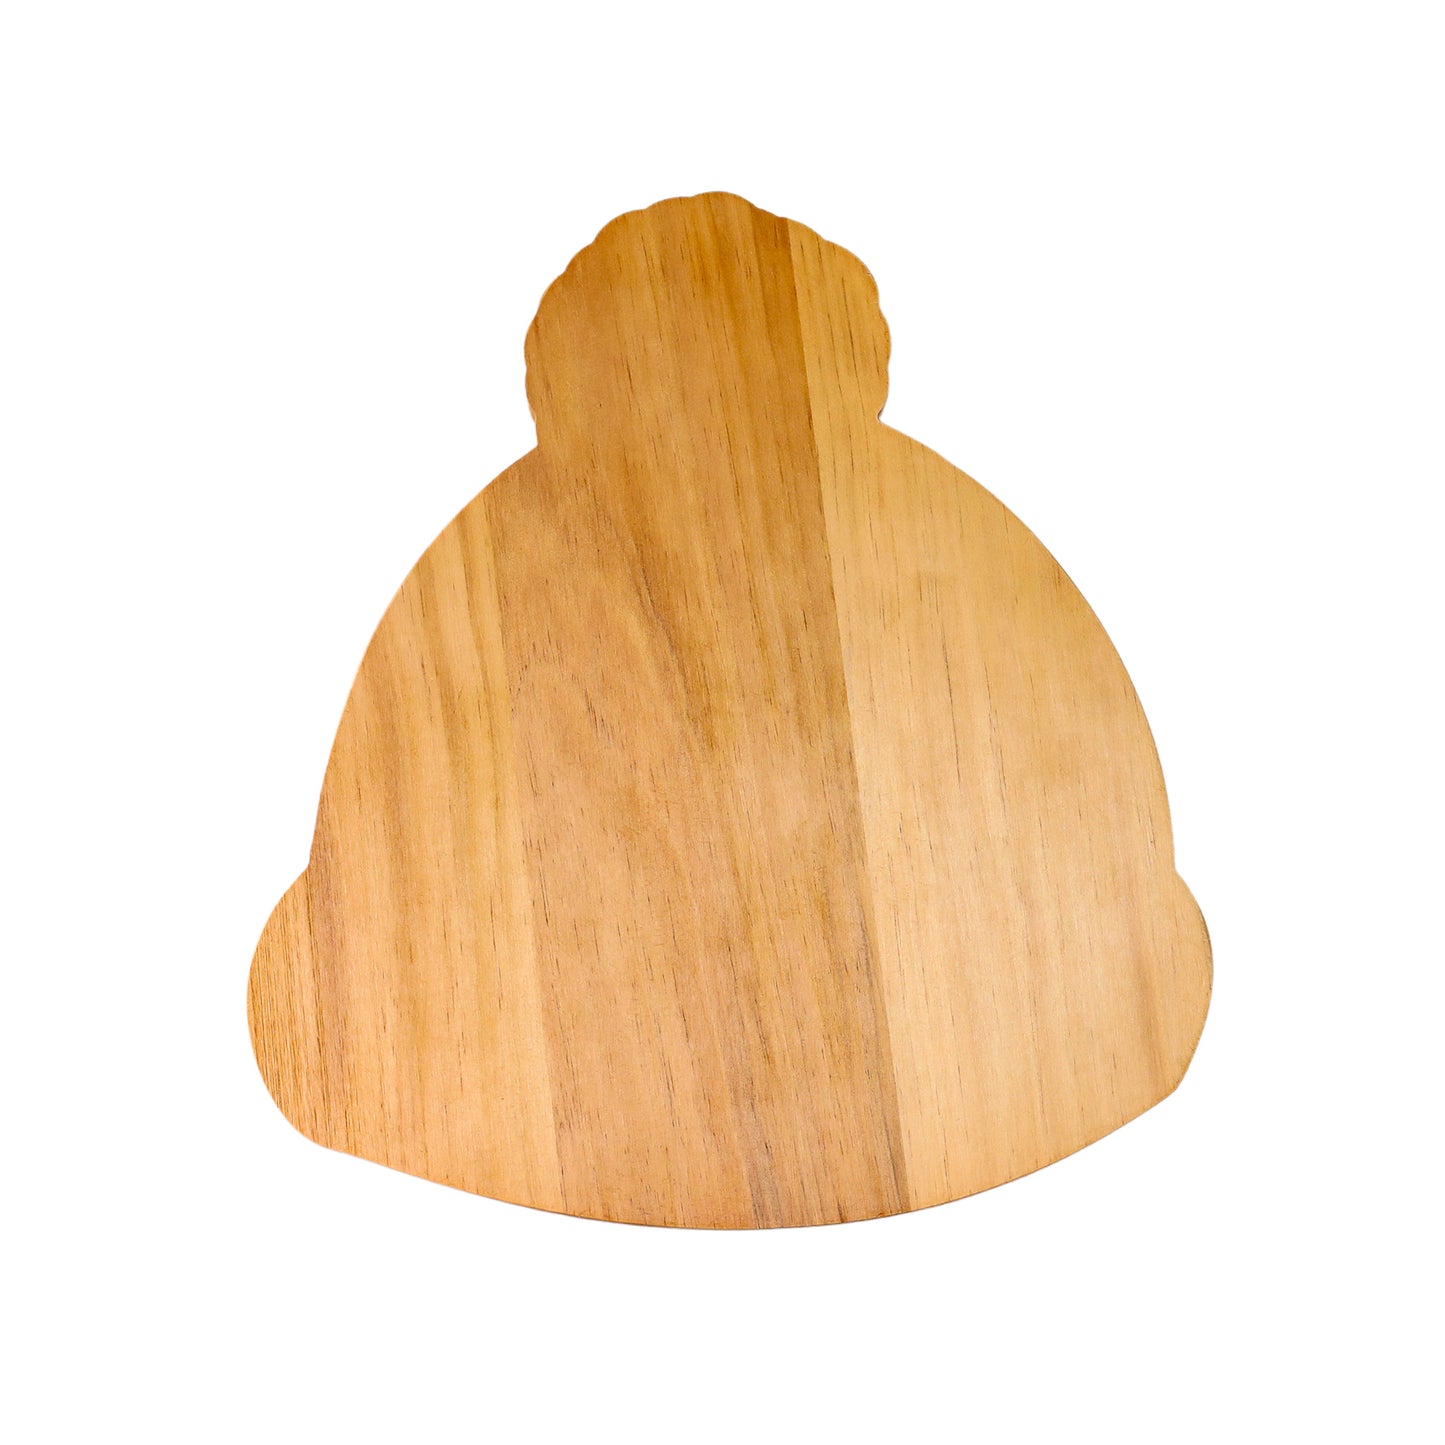 Winter Hat Wood Board, 15" x 13.6"